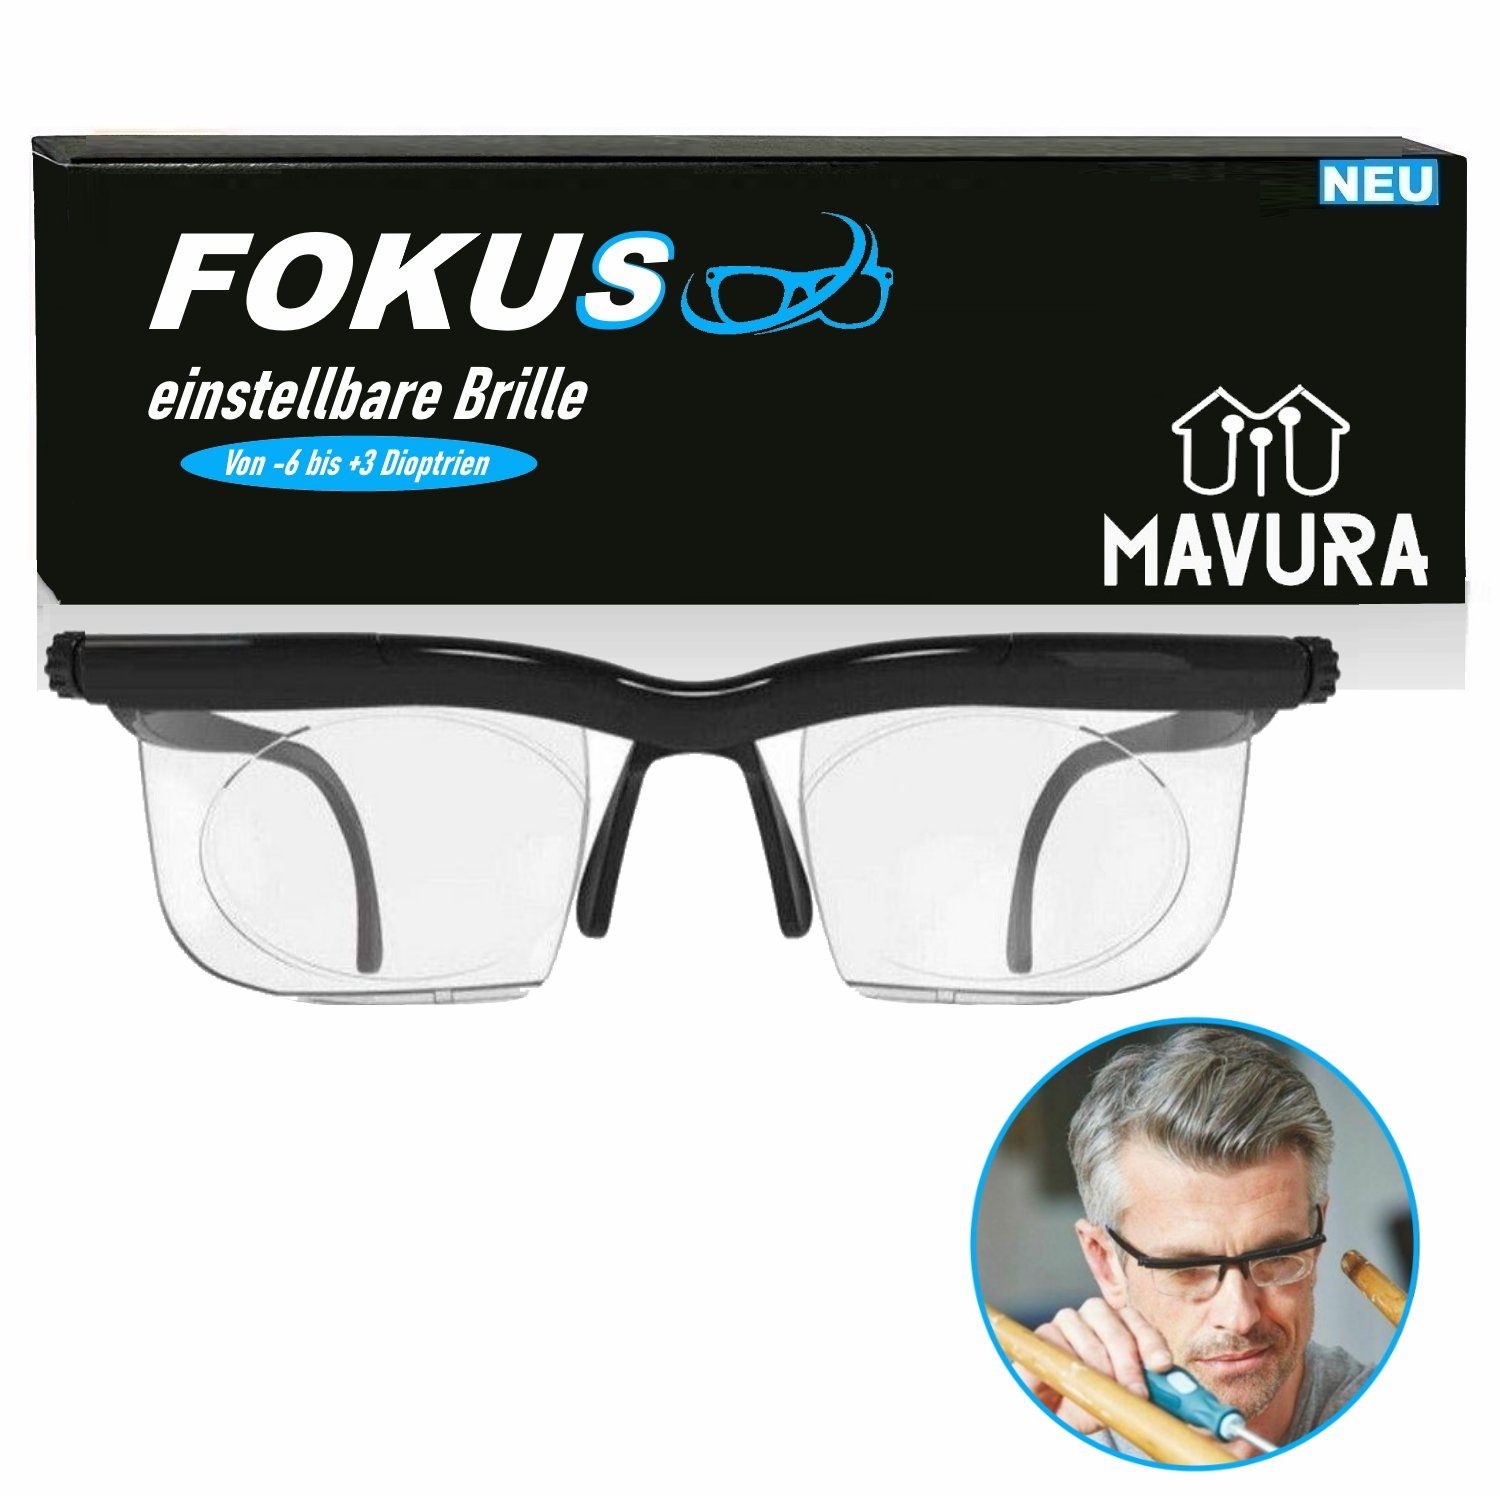 bis Brille Lesebrille Brille einstellbare +3 FOKUS Dioptrien, individuell einstellbar Glass Verstellbare -6 Lens MAVURA Ad